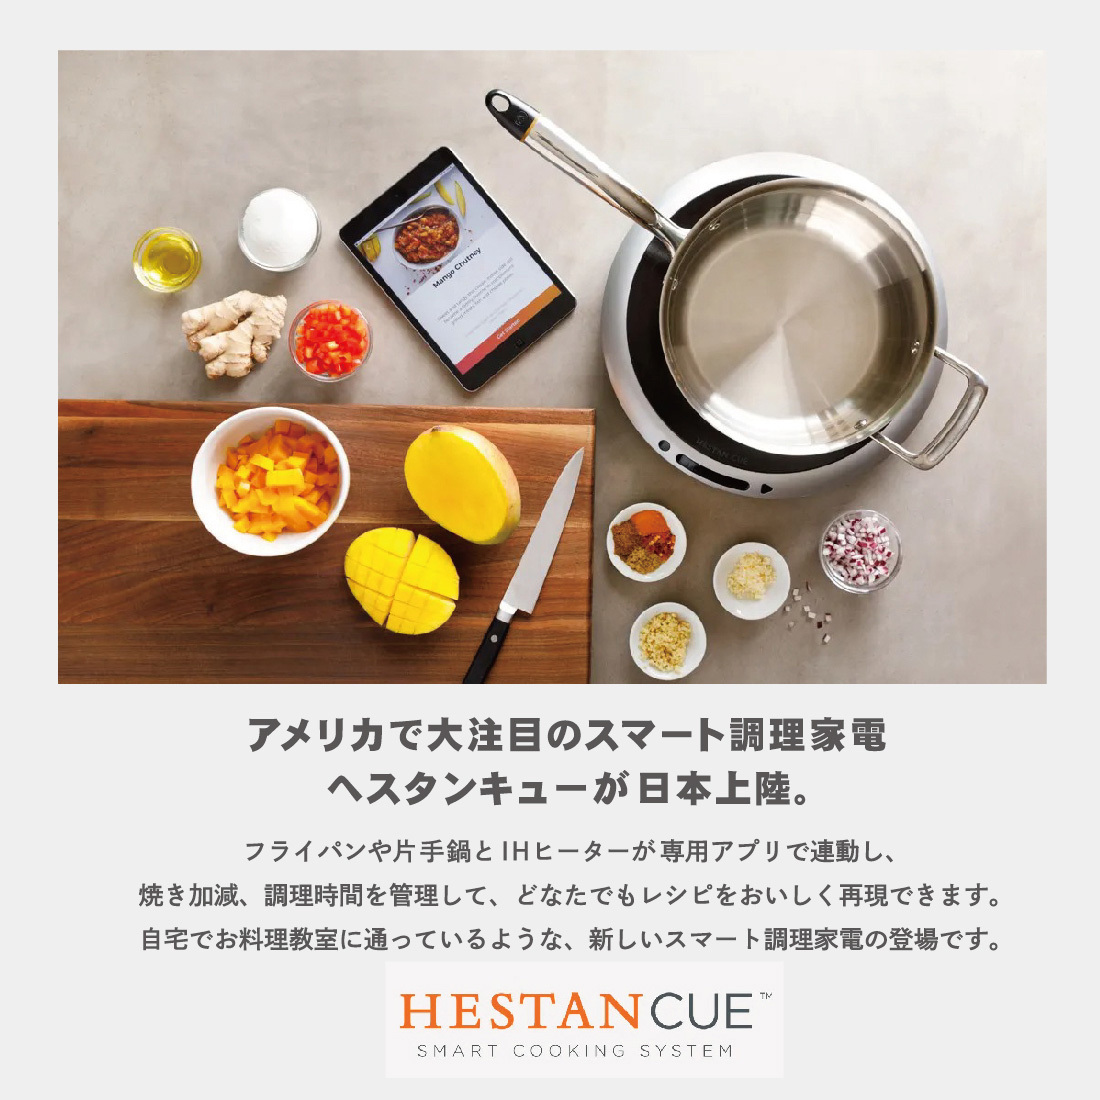 Hestan Cue/へスタン キュー/スマートIHヒーター/キッチン/スマート